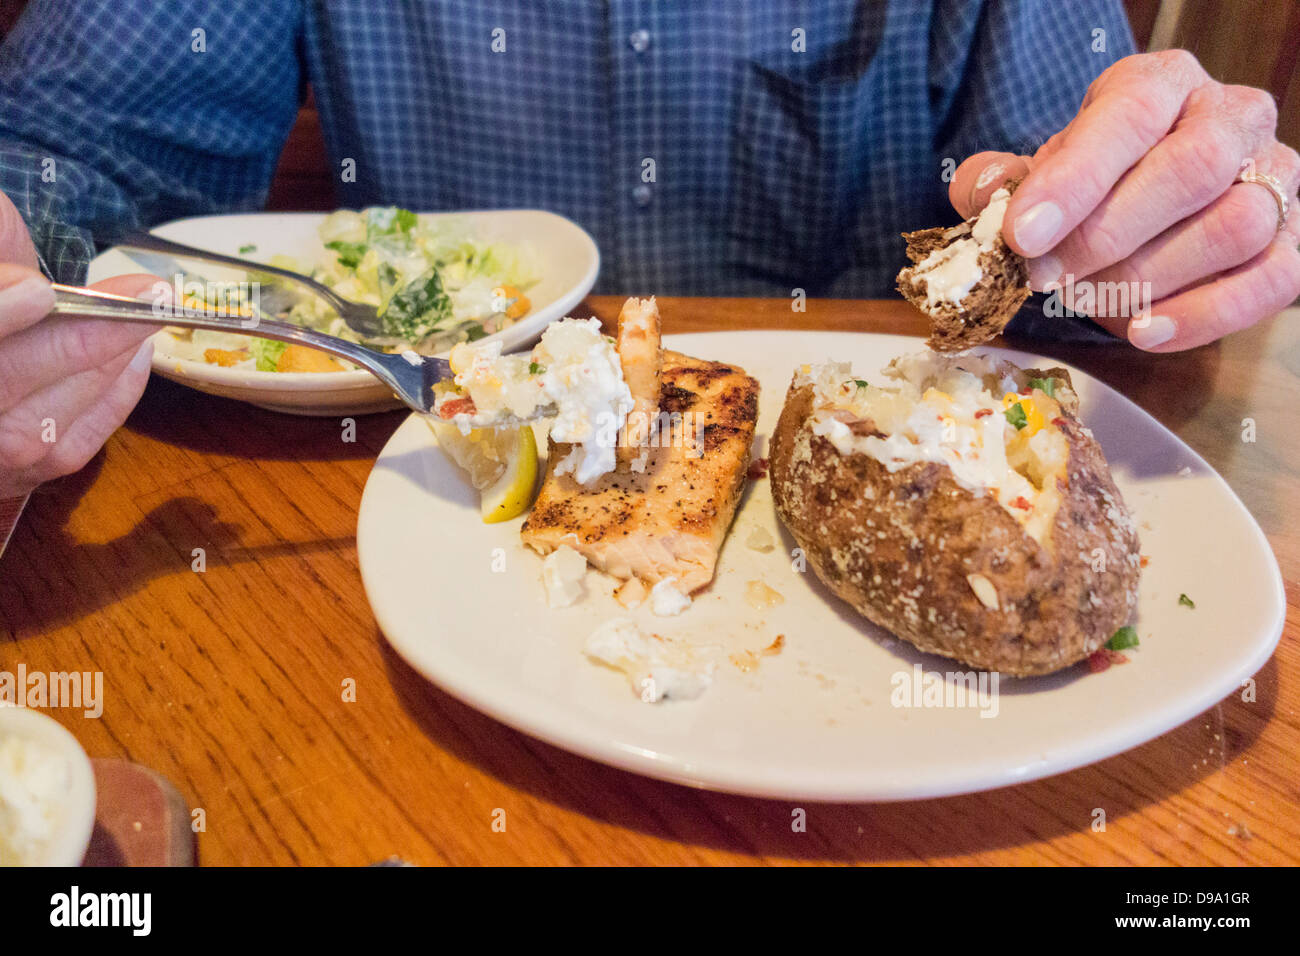 Ein älterer Mann, Brust und nur Hände, ißt einen gegrillten Lachs, gebackene Kartoffel, Salat und Brot in einem Restaurant. USA Stockfoto